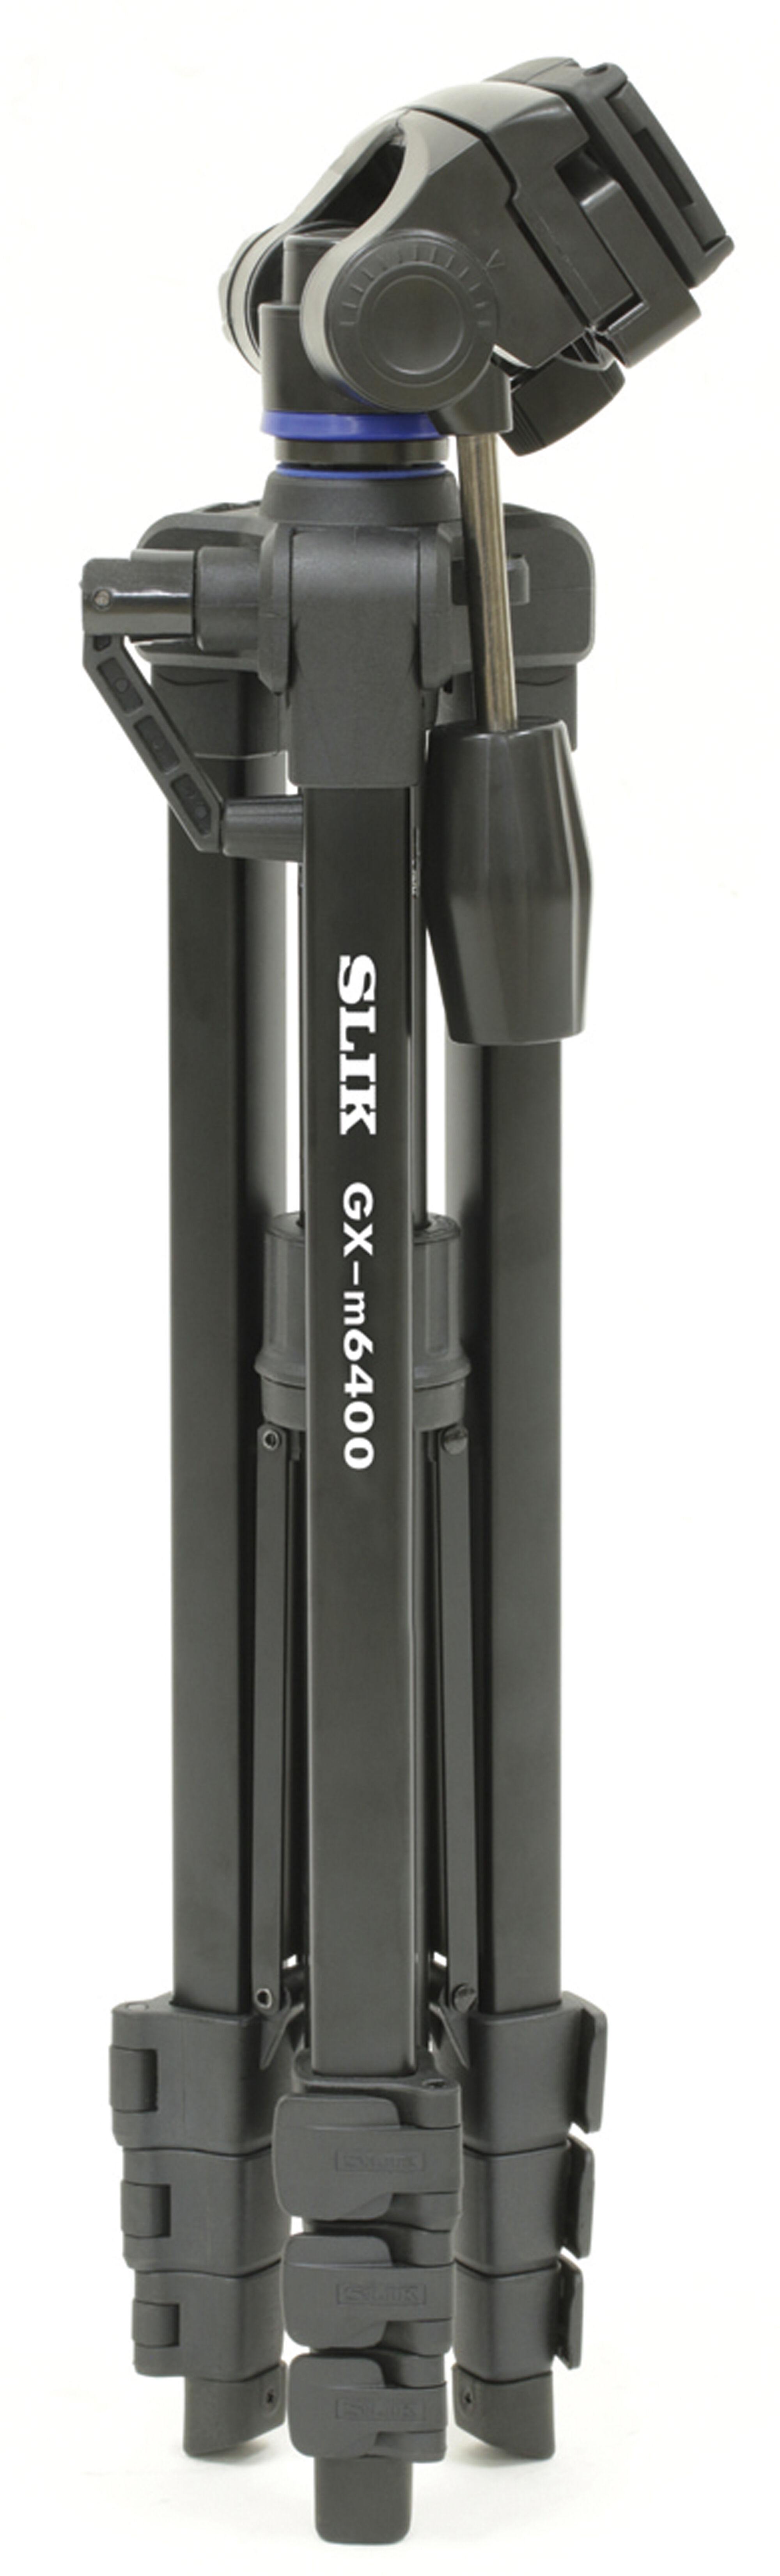 スリック SLIK 一脚兼簡易三脚 スタンドポッドGX-N 4段レバーロック式